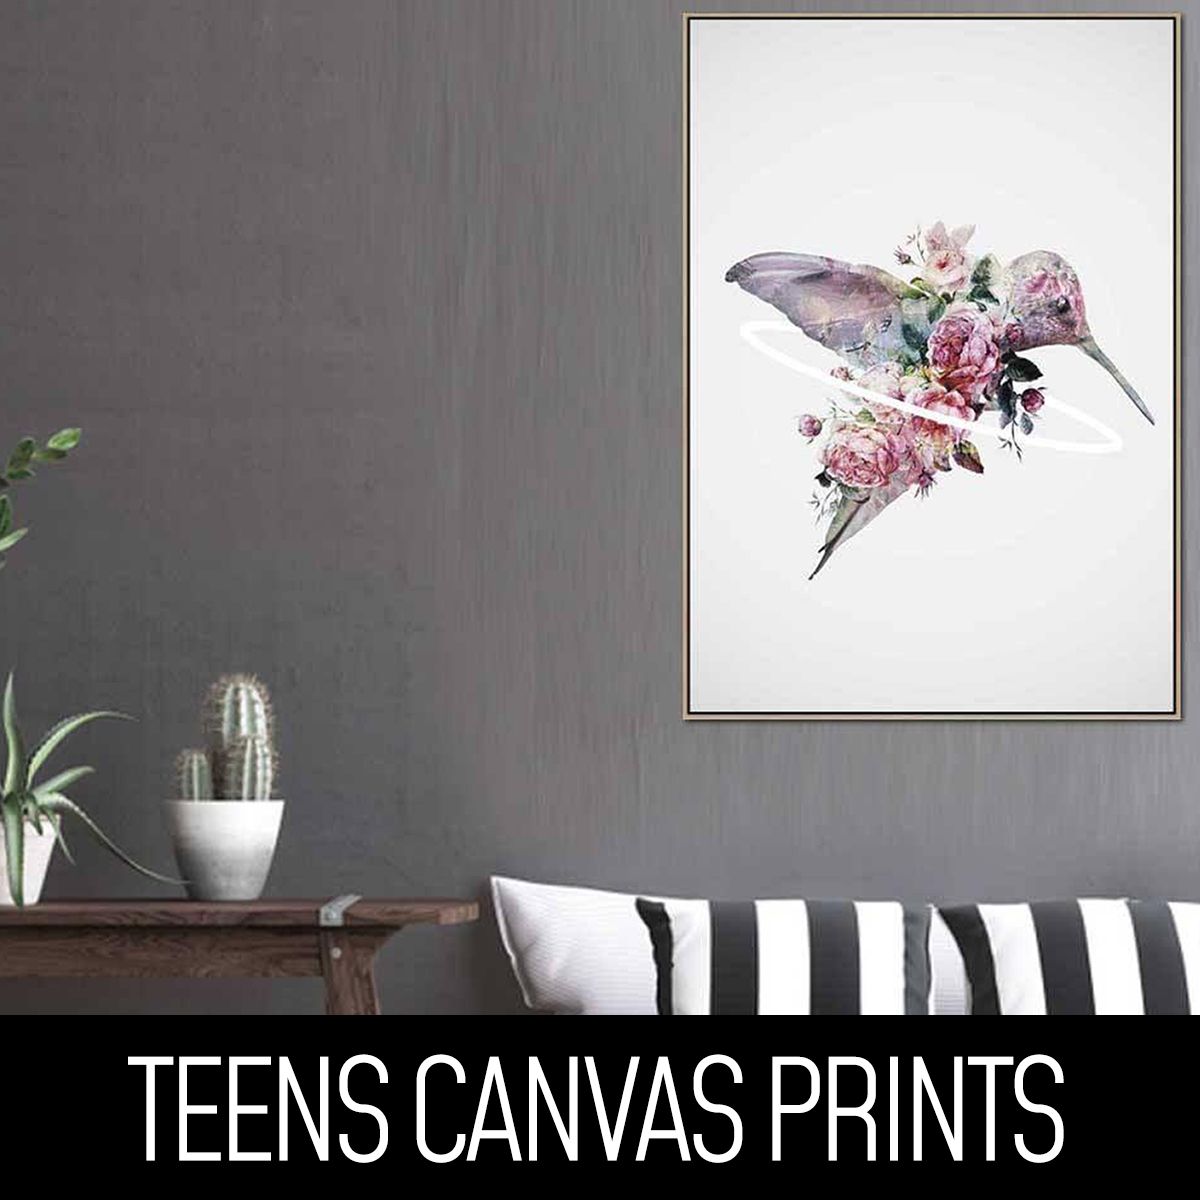 Teens Canvas Prints